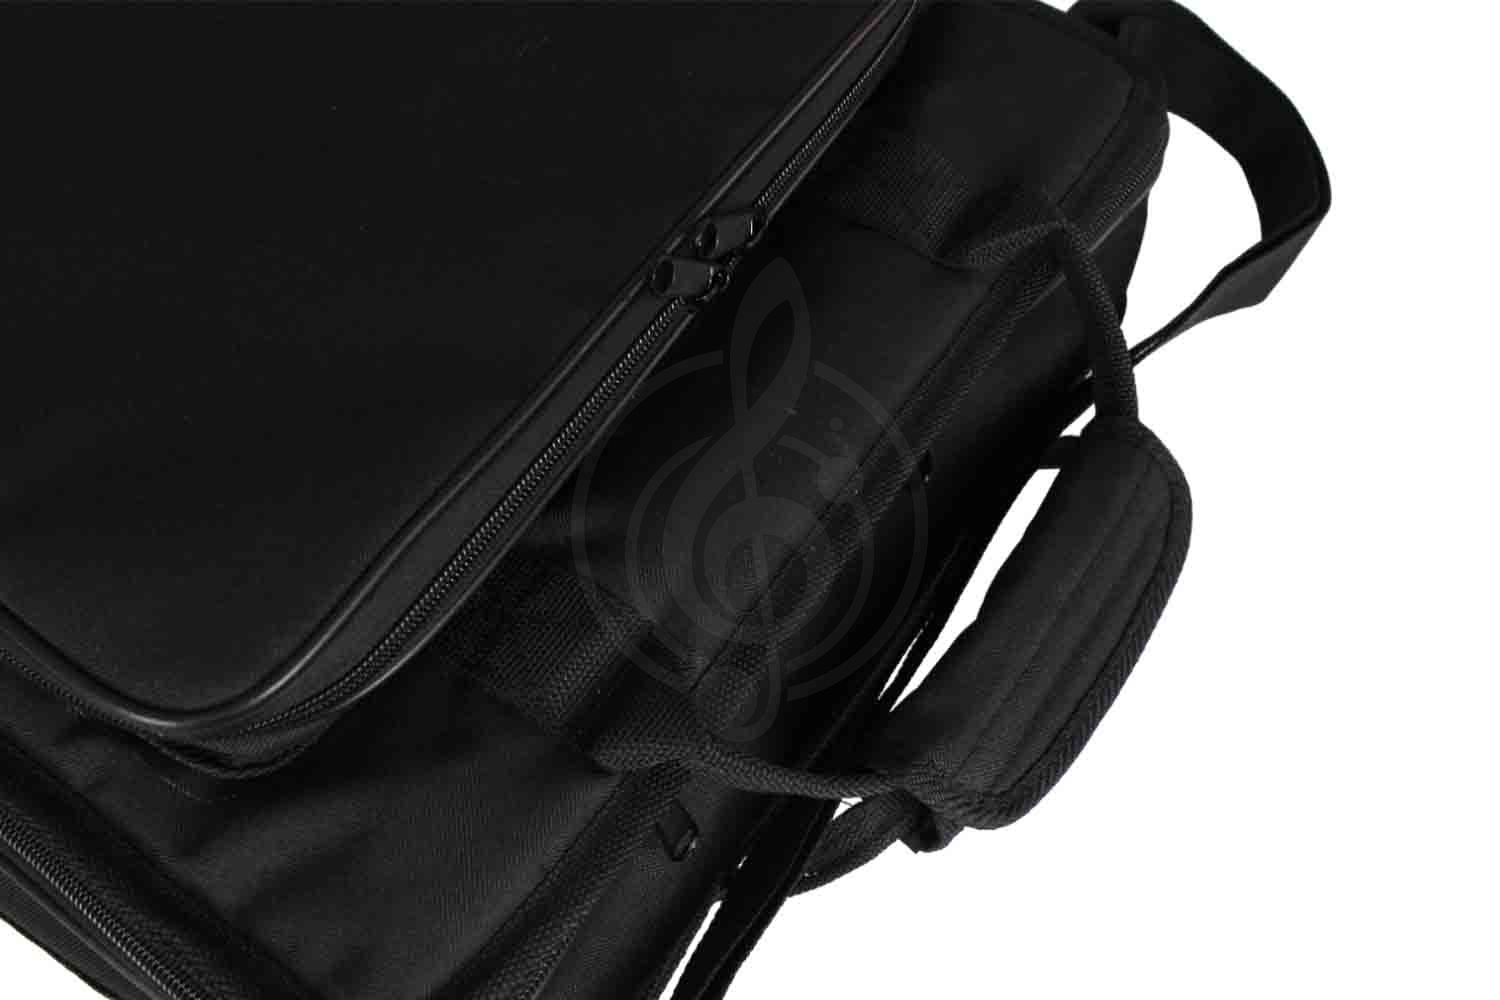 Чехол и кейс для звукового оборудования Magic Music Bag Ч-ПМ8 - чехол для микшера GrandVox PM-8, Magic Music Bag Ч-ПМ8 в магазине DominantaMusic - фото 7